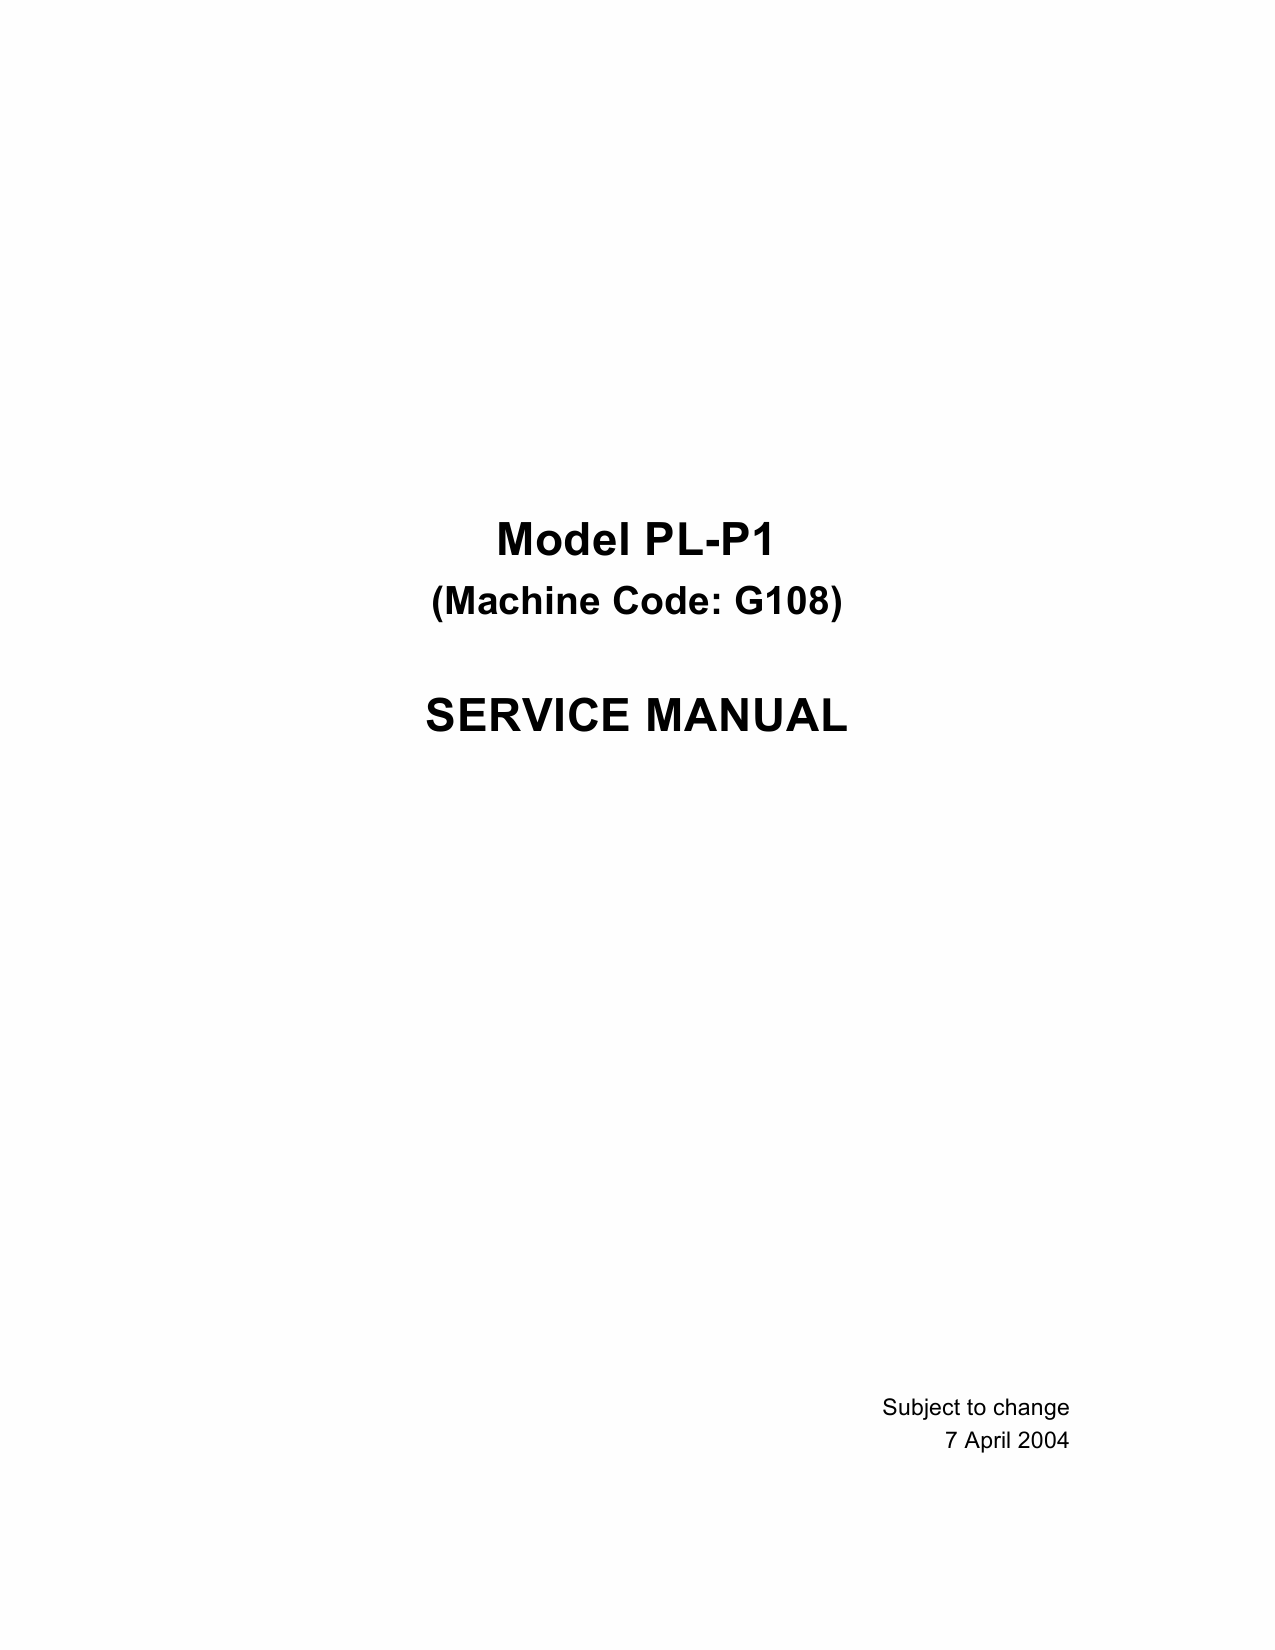 RICOH Aficio CL-1000 G108 Parts Service Manual-1